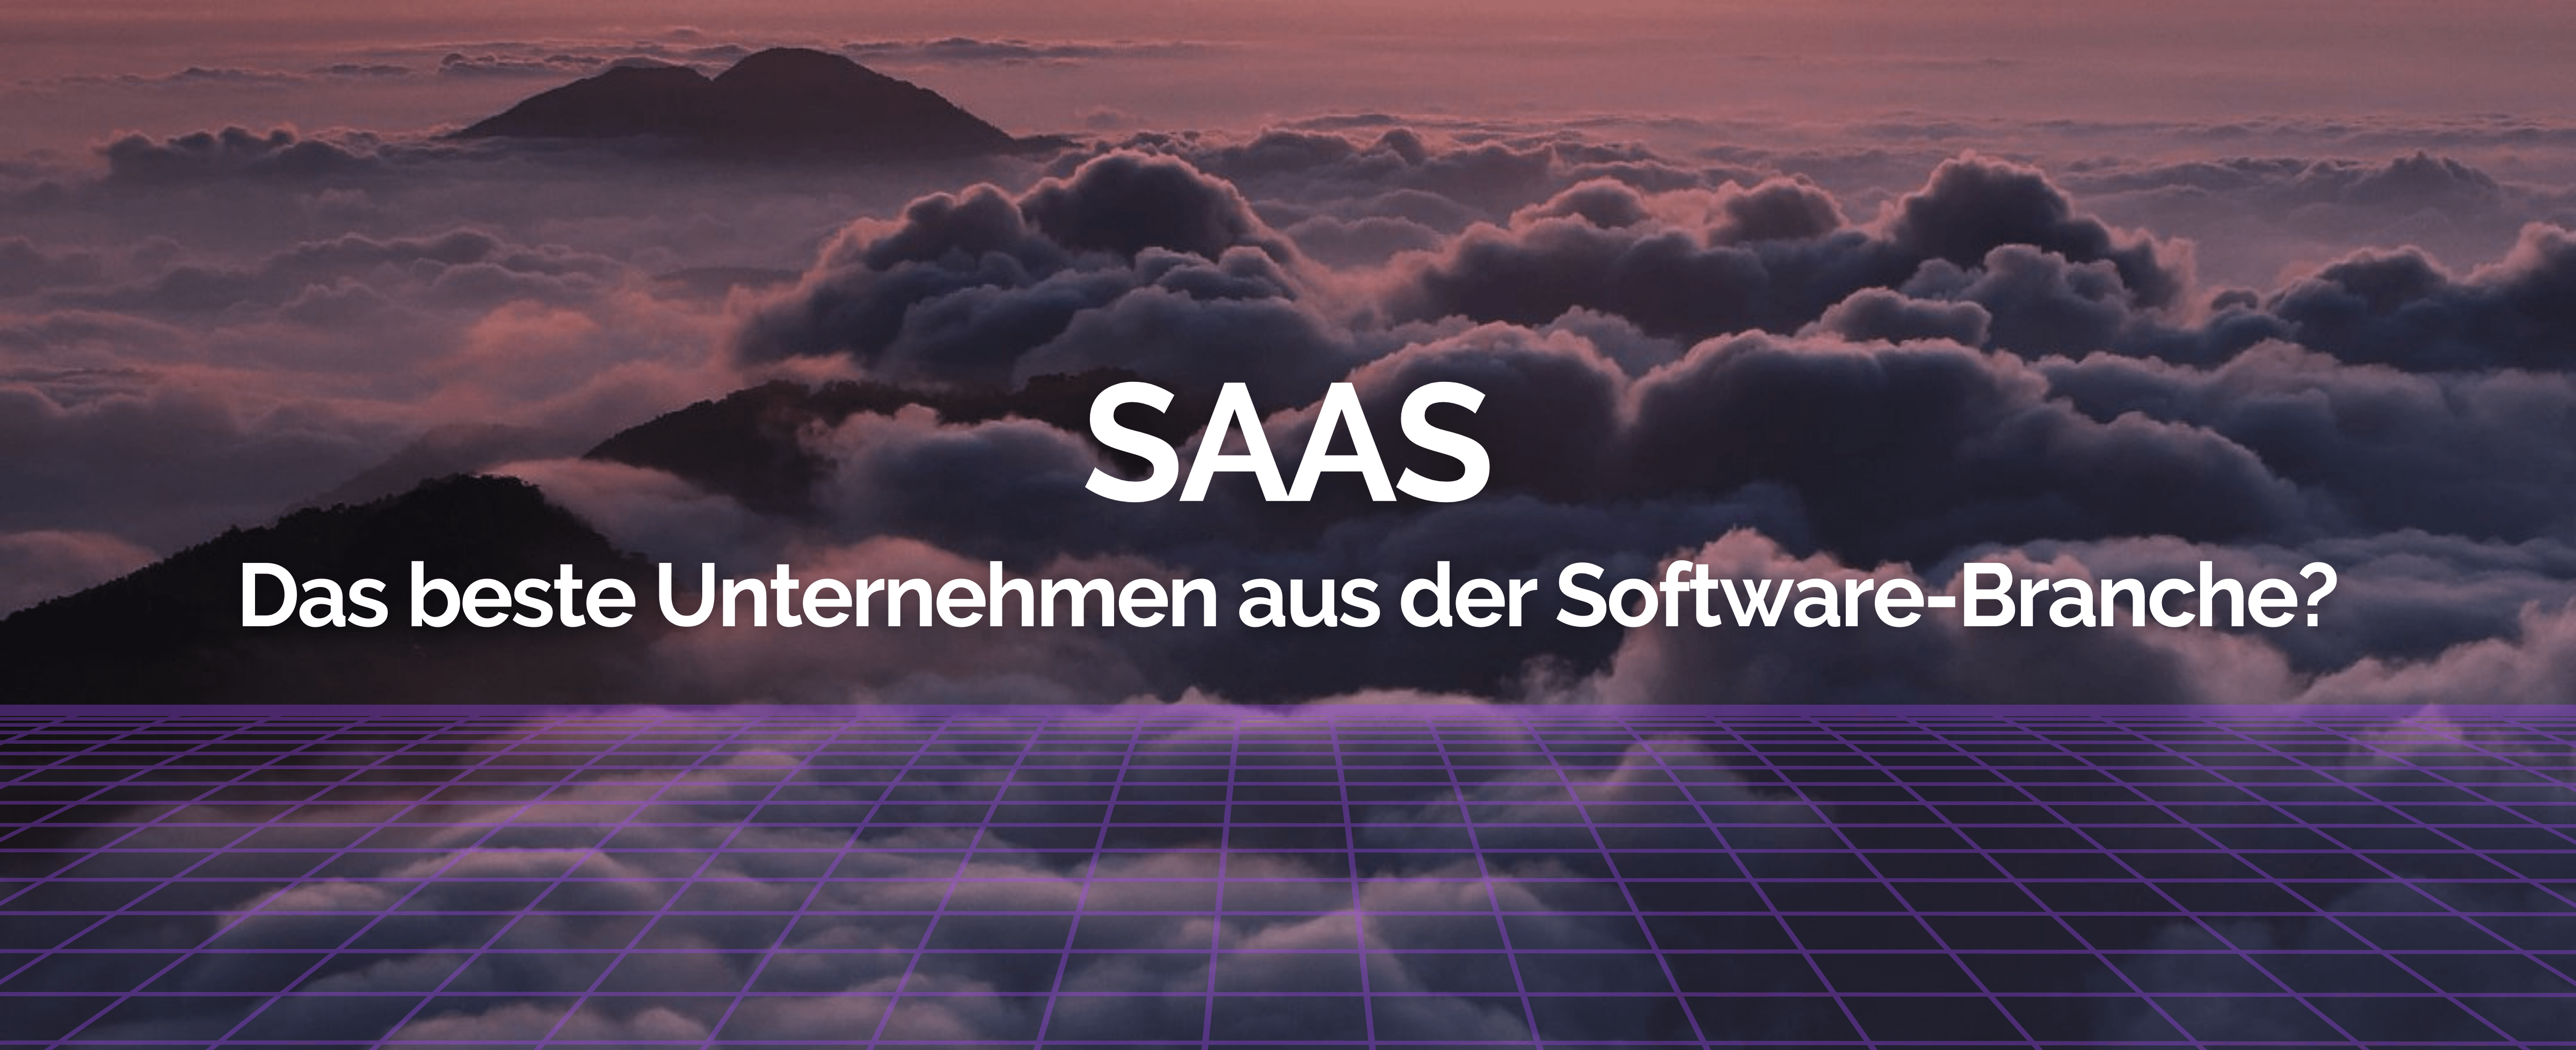 SaaS Aktie Analyse – Das beste Unternehmen aus der Software-Branche?